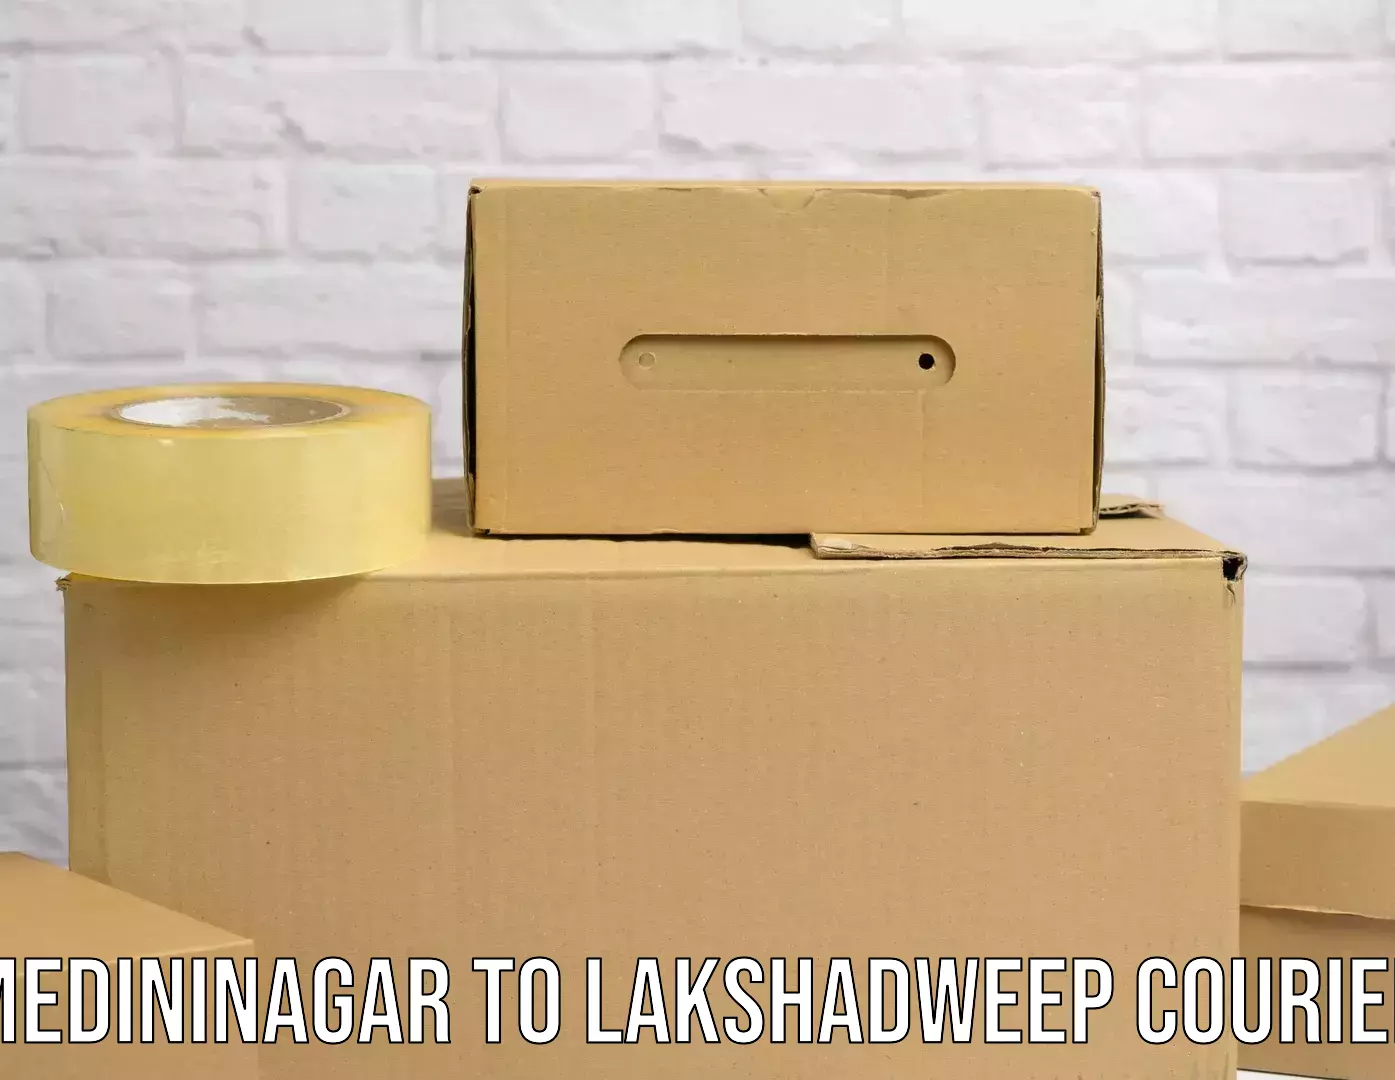 Express courier facilities Medininagar to Lakshadweep